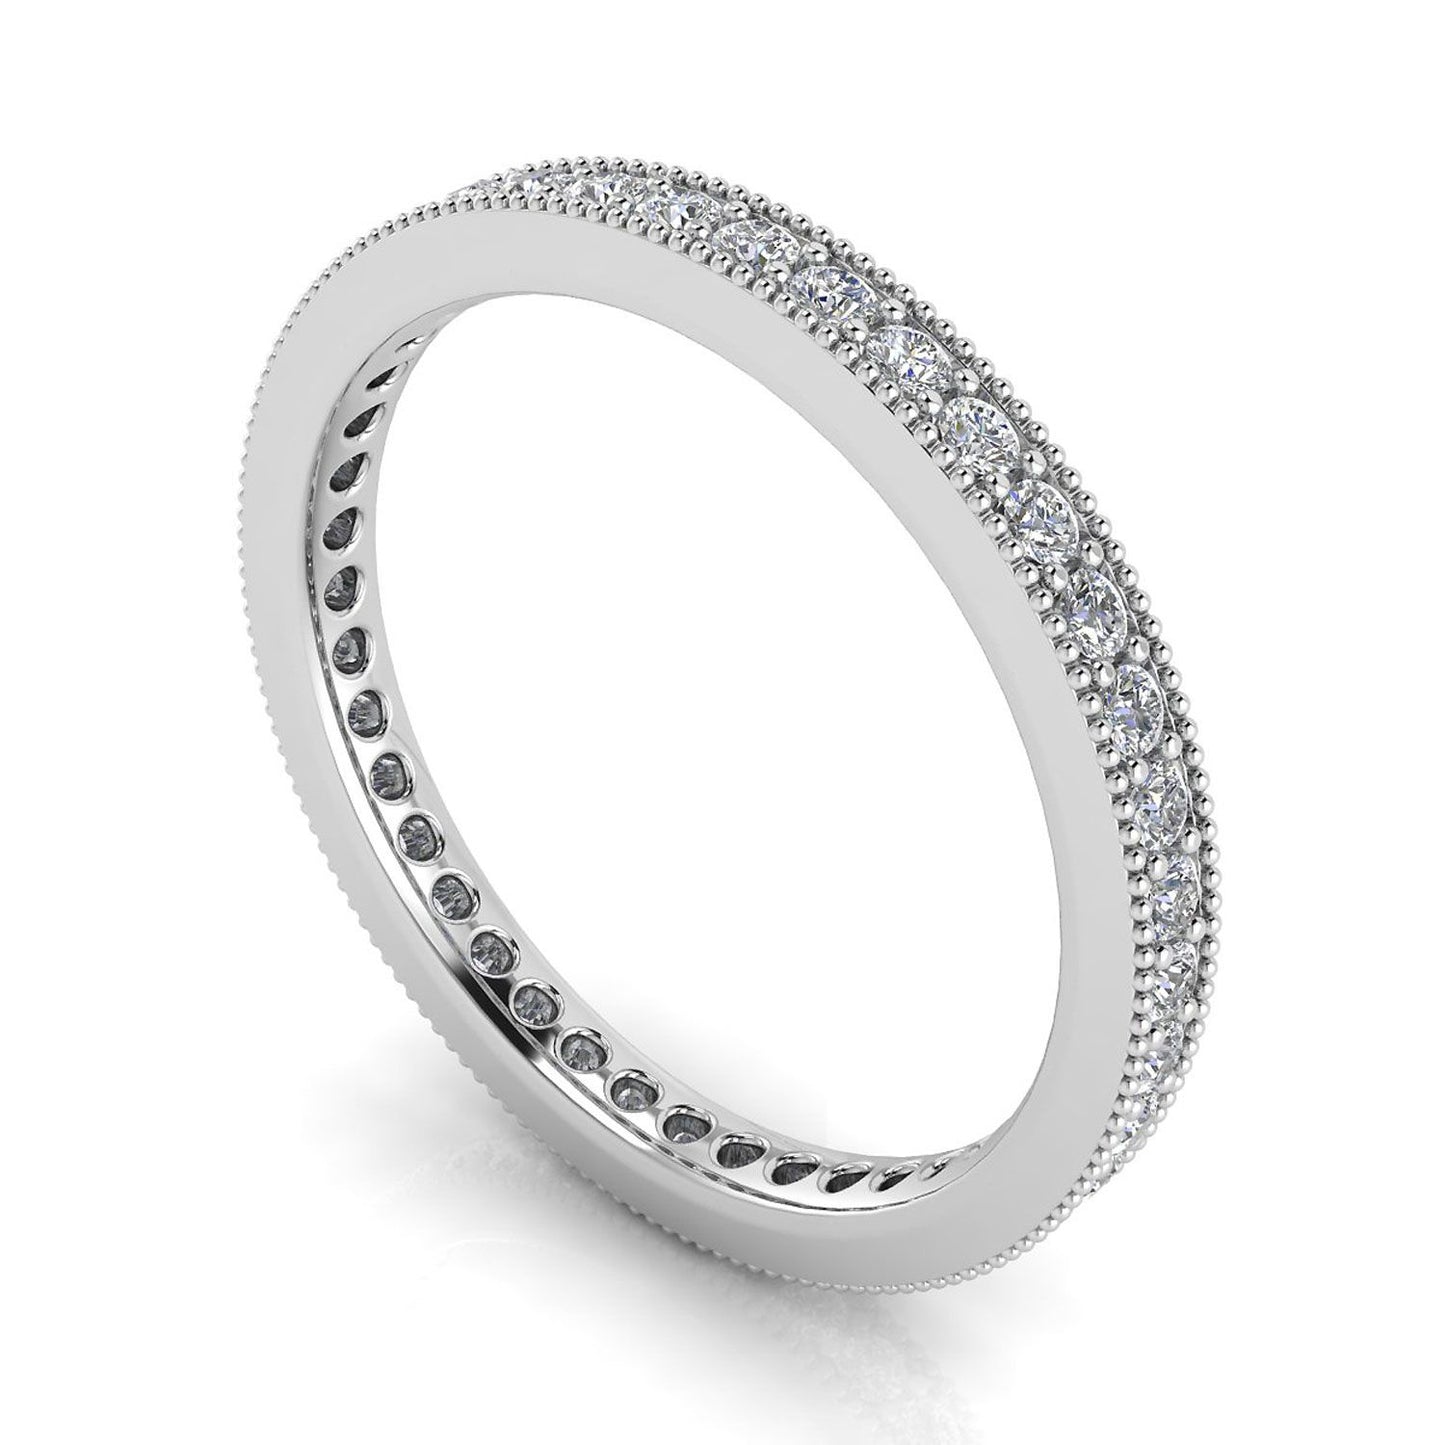 Round Brilliant Cut Diamond Pave & Milgrain Set Eternity Ring In Platinum  (0.77ct. Tw.) Ring Size 8.5